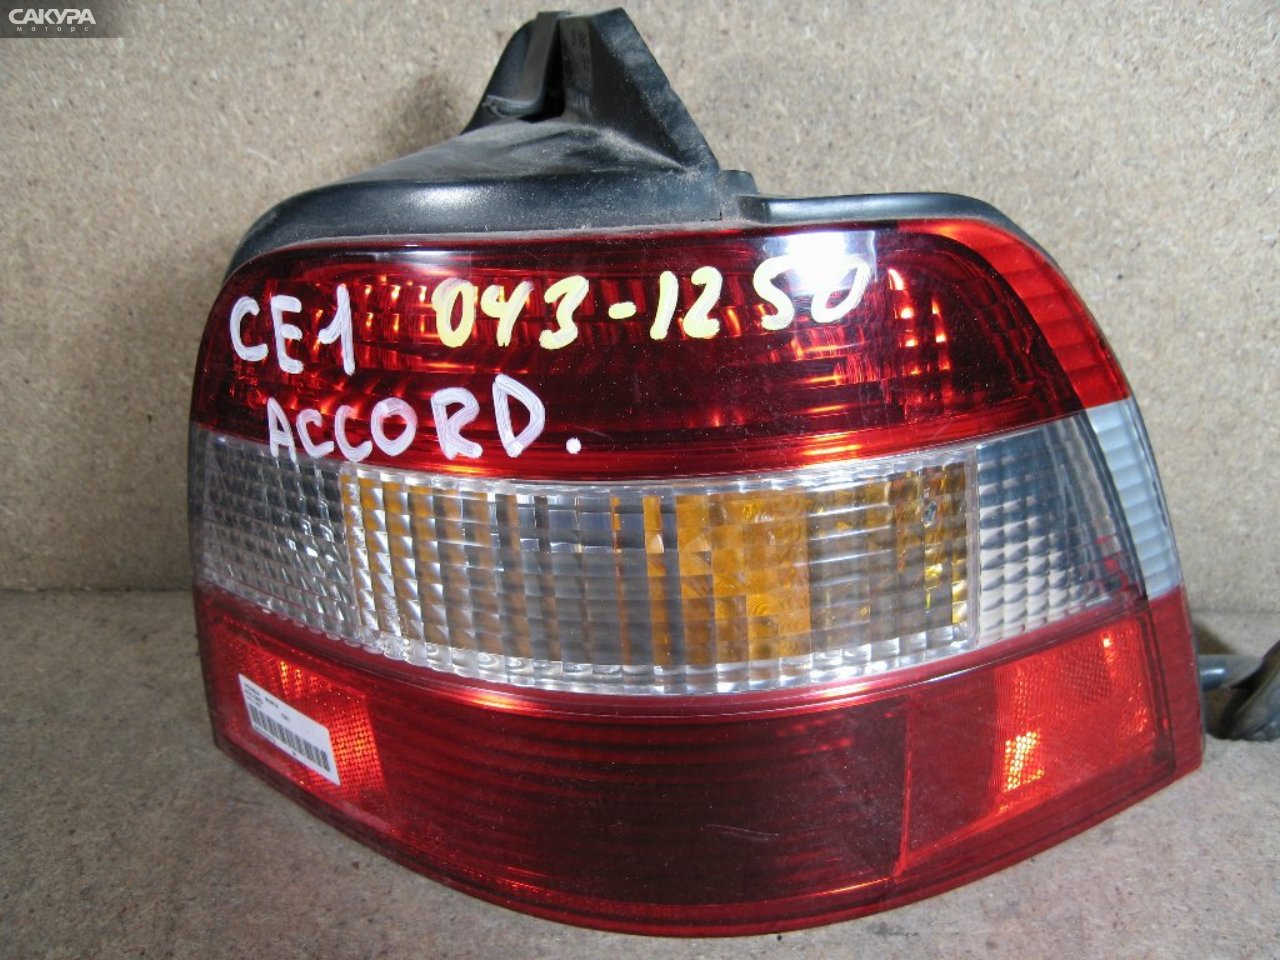 Фонарь стоп-сигнала правый Honda Accord Wagon CE1 043-1250: купить в Сакура Абакан.